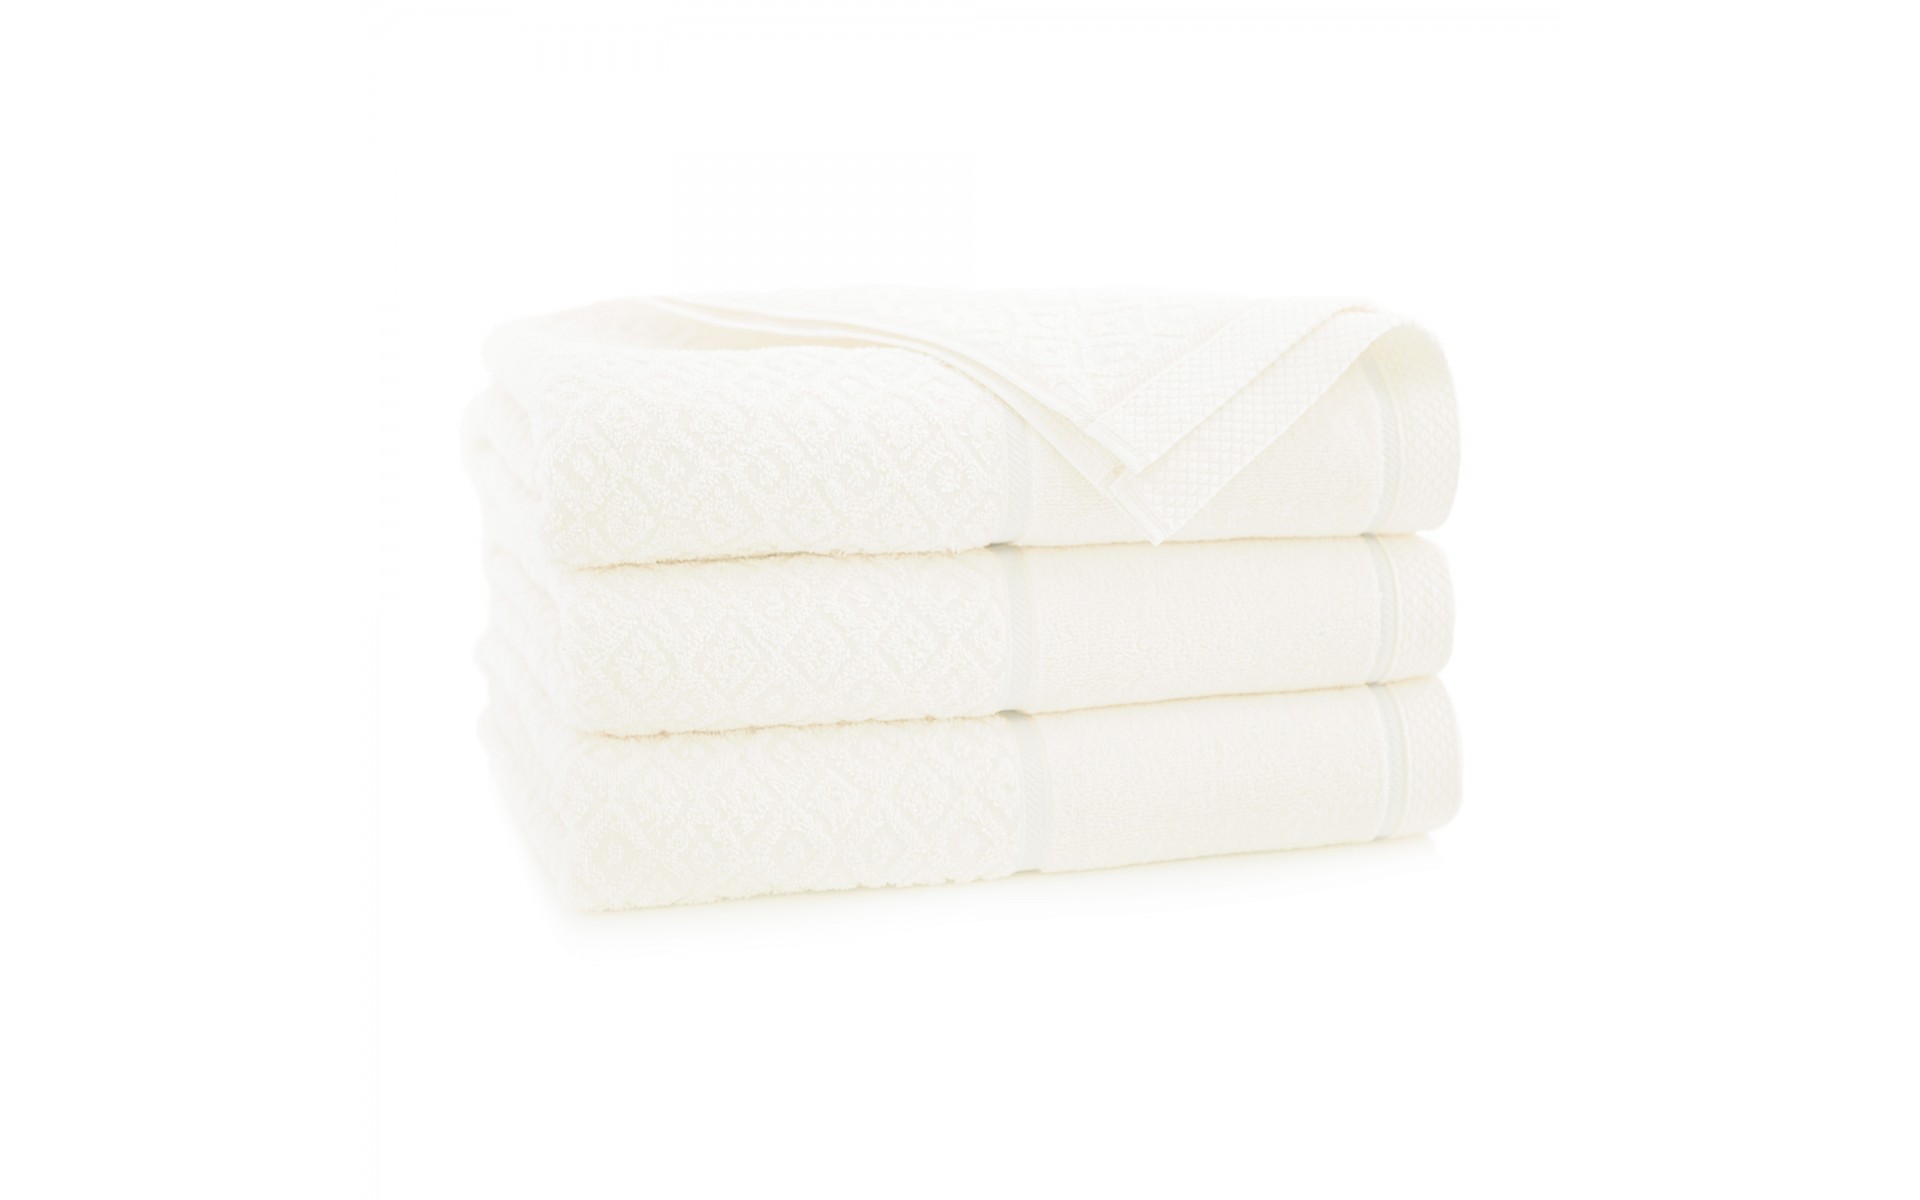 ręcznik MAKAO AB kremowy - 8215